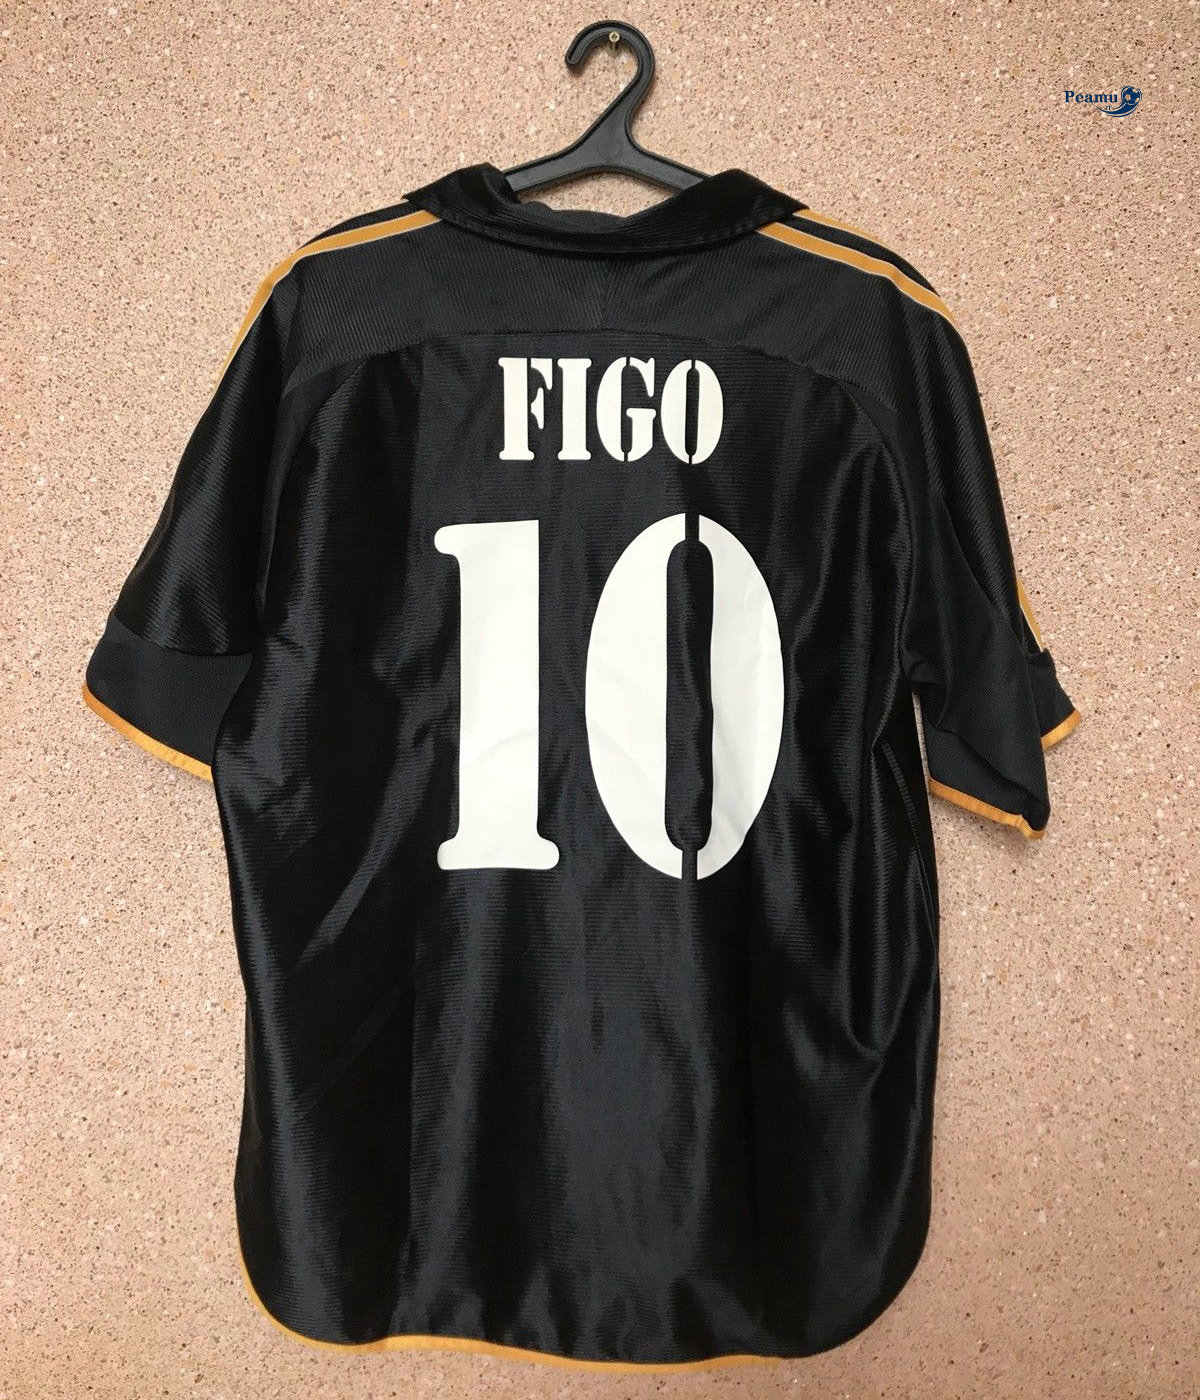 Classico Maglie Real Madrid Nero (10 Figo) 1999-00